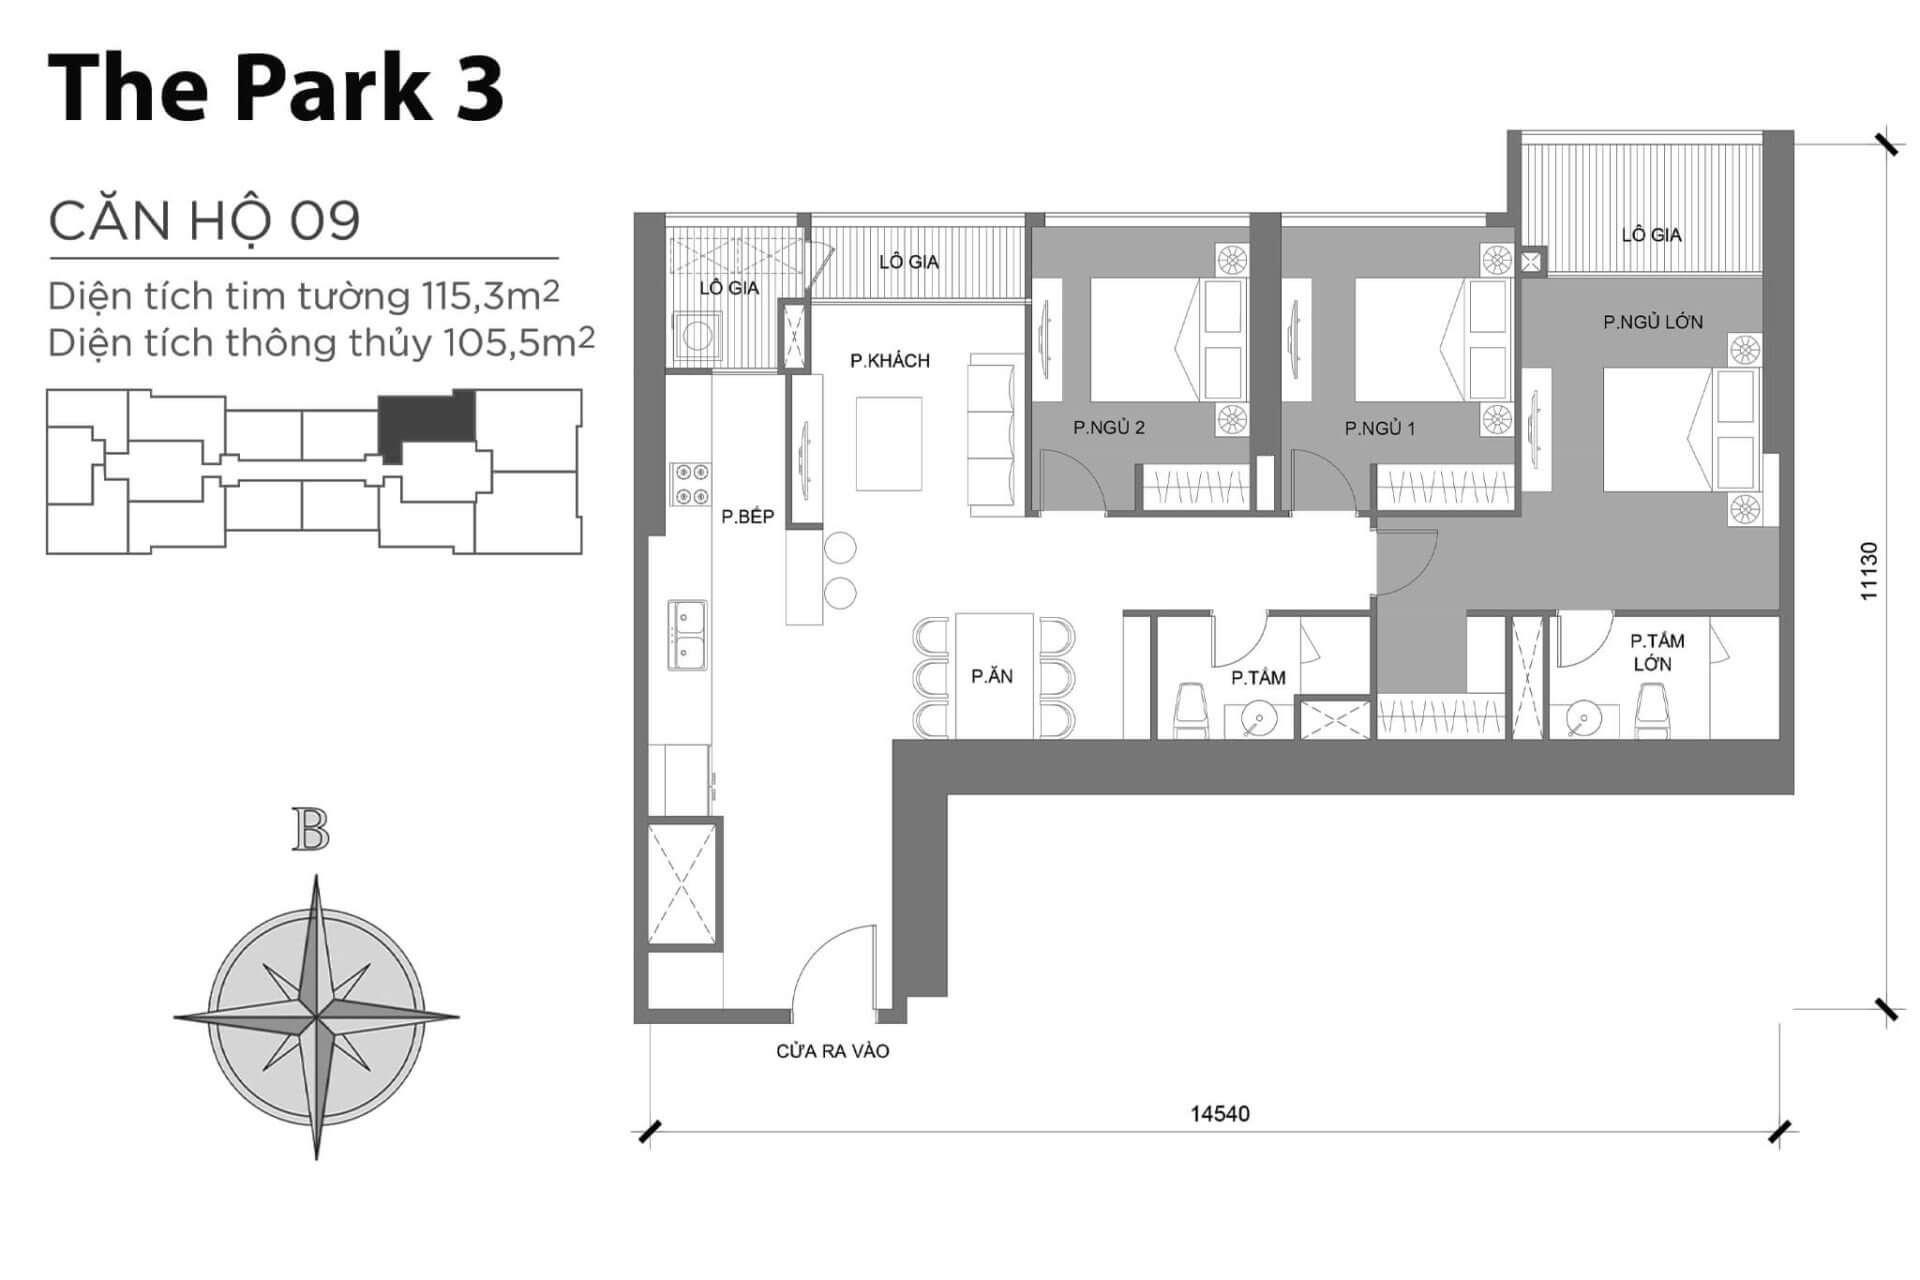 mặt bằng layout căn hộ số 09 Park 3 Vinhomes Central Park